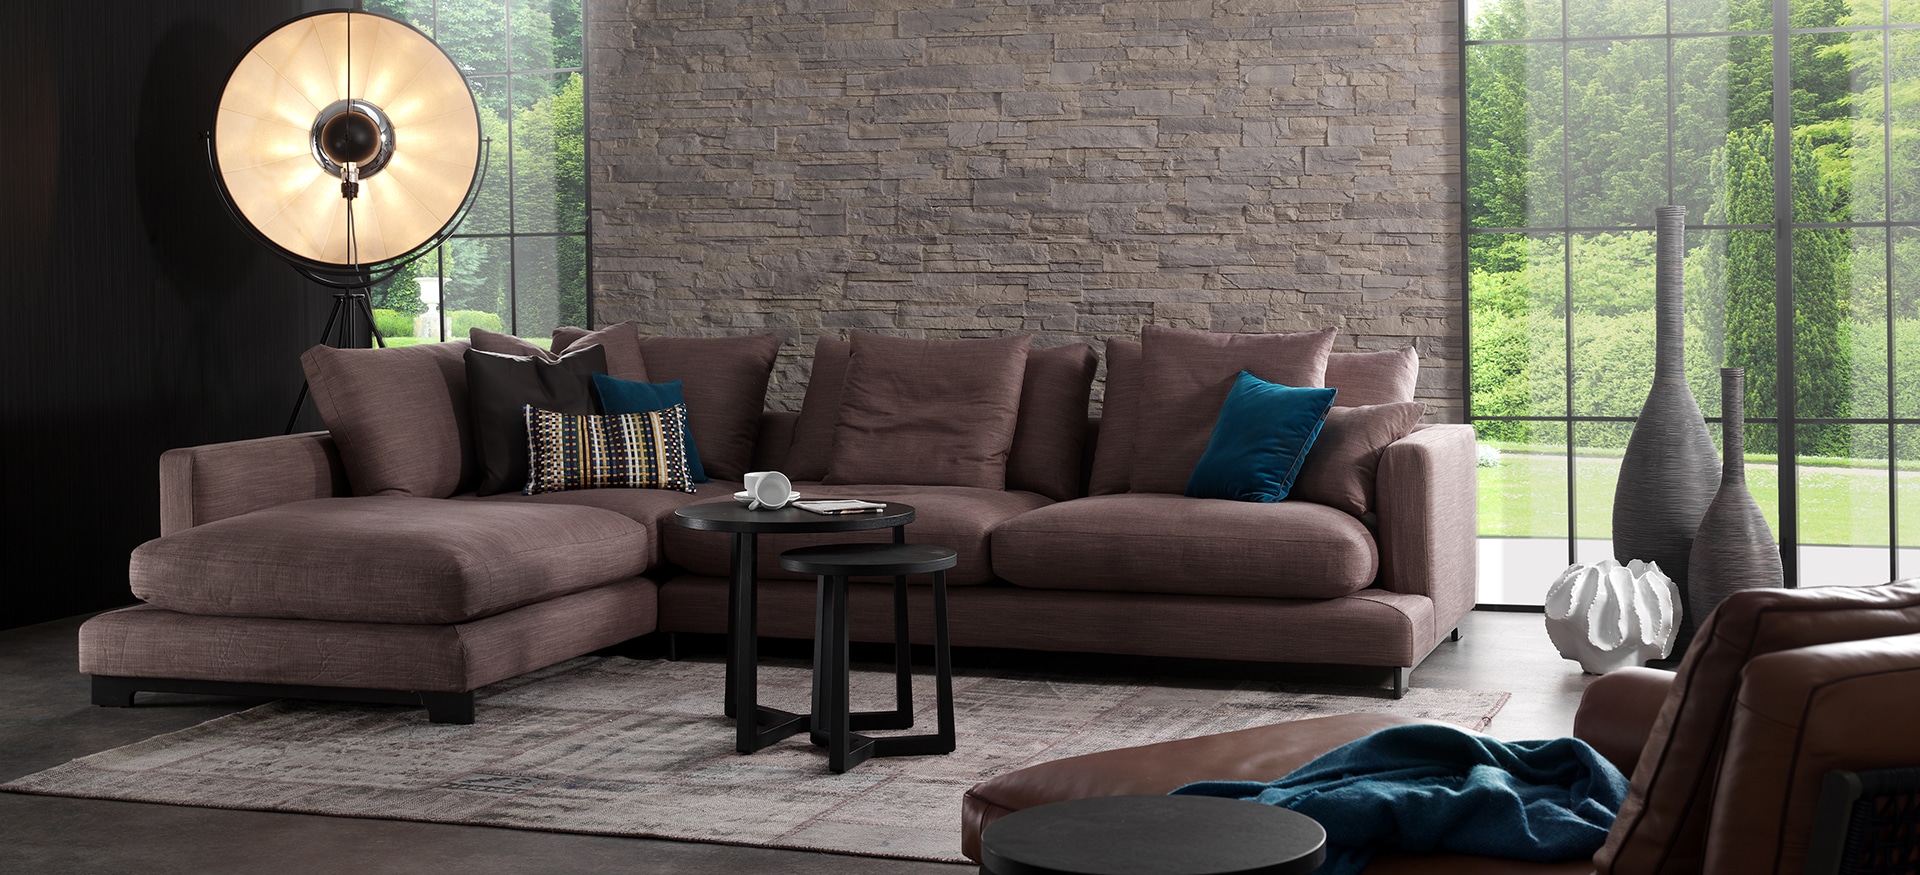 LazyTime Sofa | Camerich USA